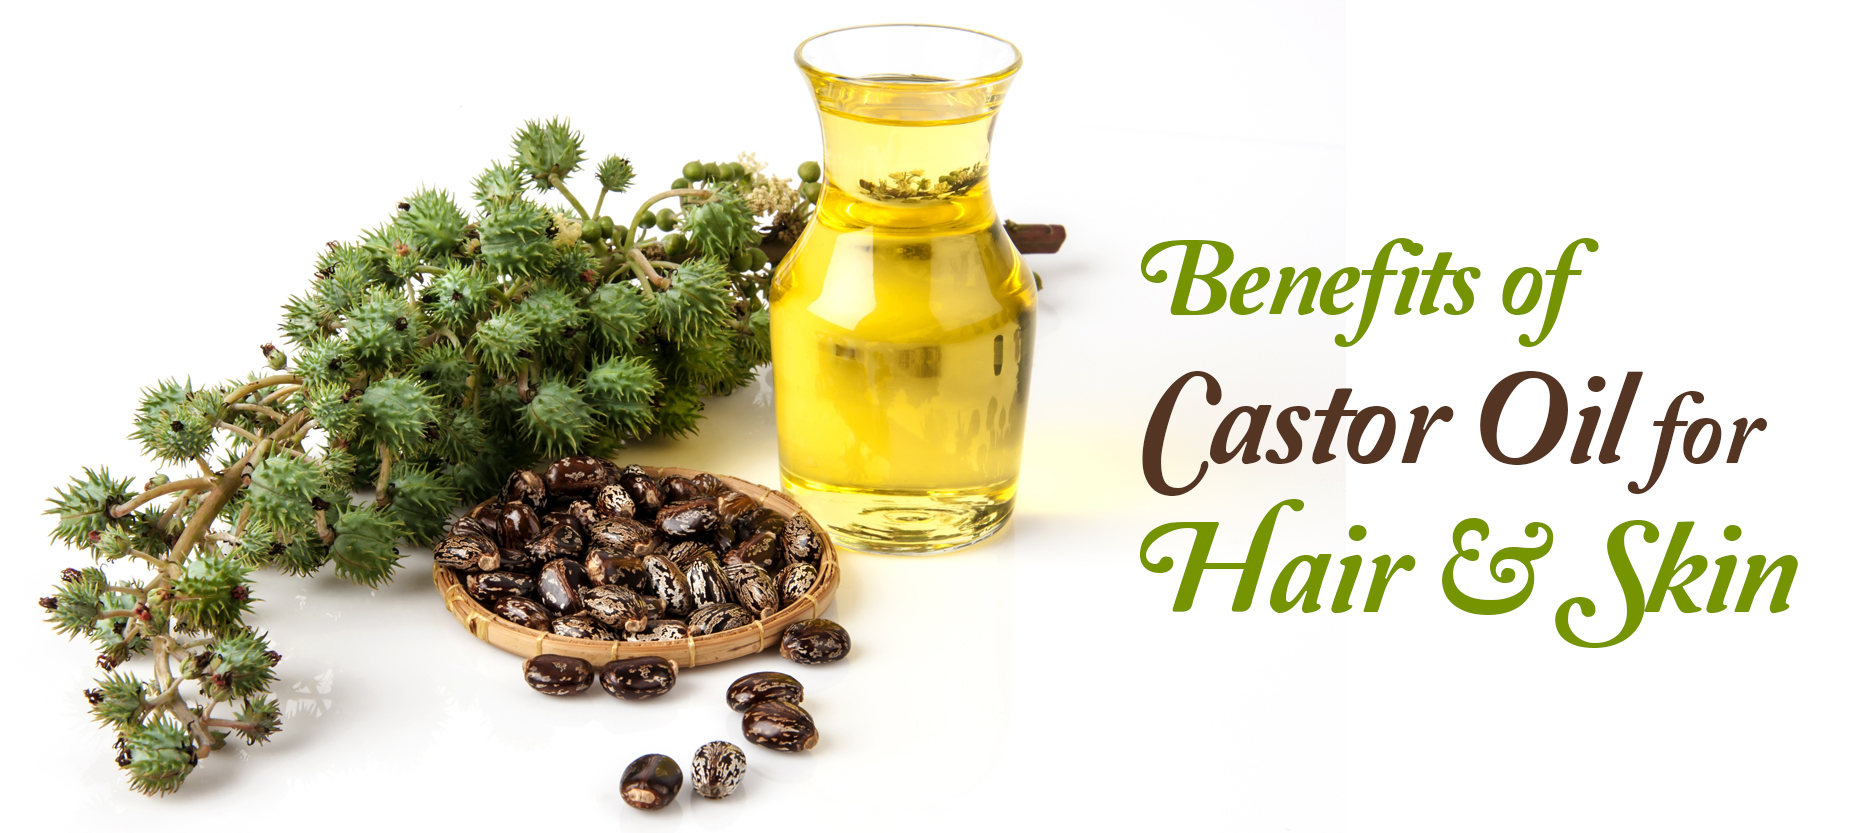 Benefits of Castor Oil for Hair & Skin